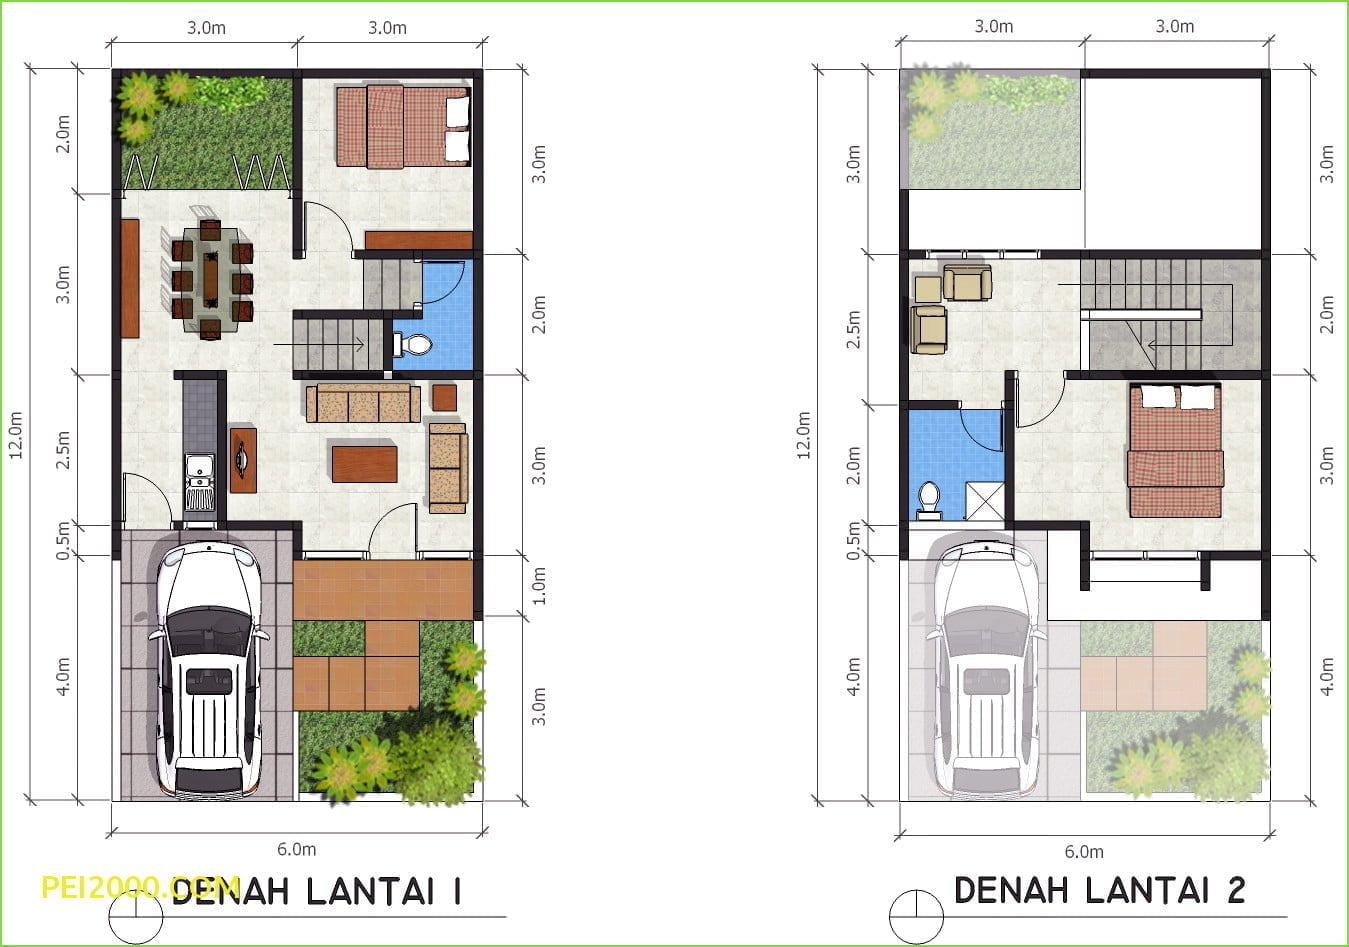 56 Ide Desain Rumah Minimalis 8x12 2 Lantai Terpopuler Yang Harus Kamu Tahu Deagam Design